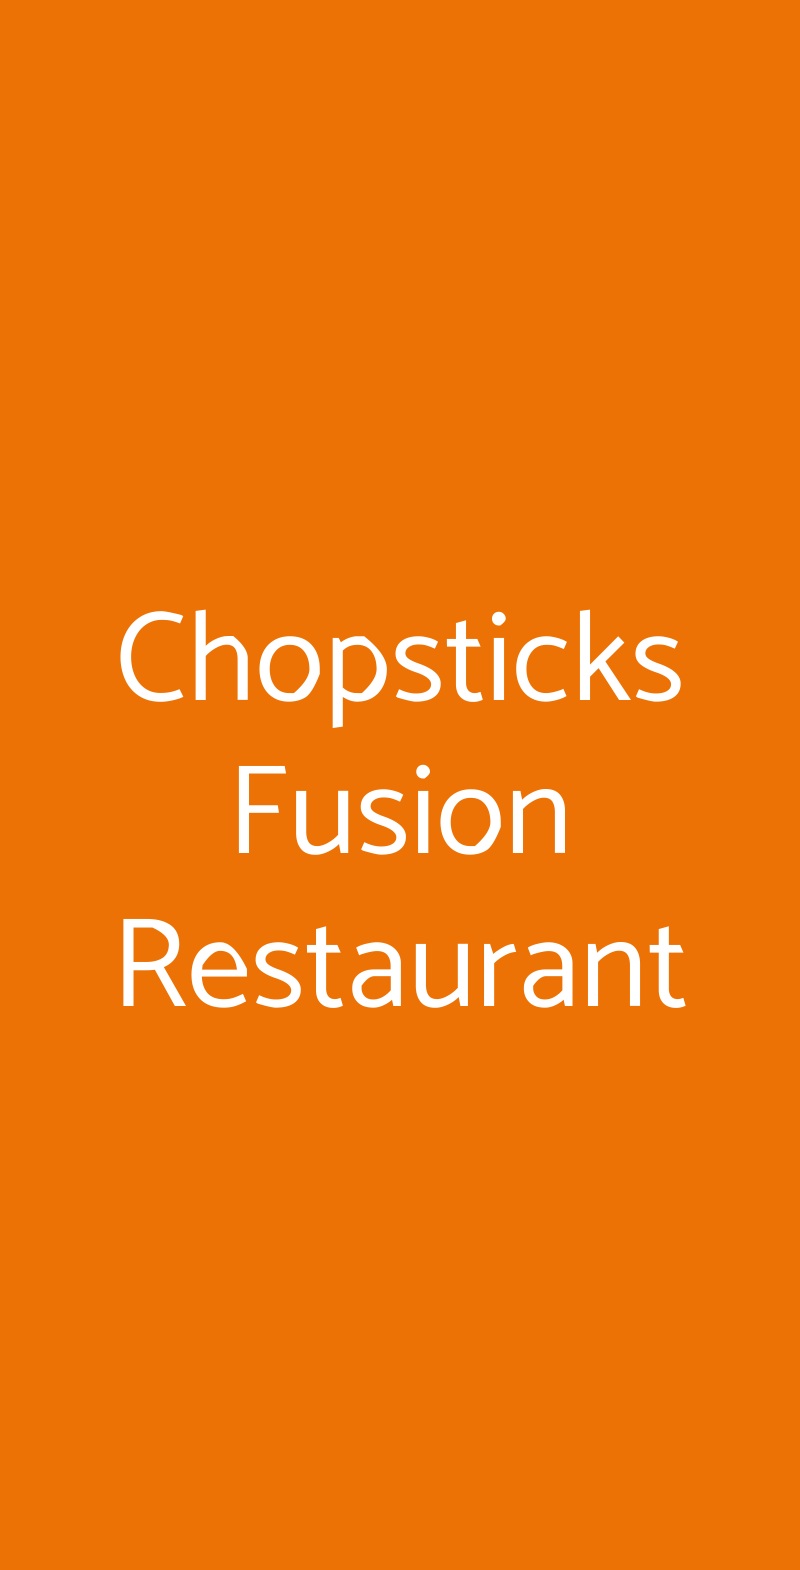 Chopsticks Fusion Restaurant Milano menù 1 pagina